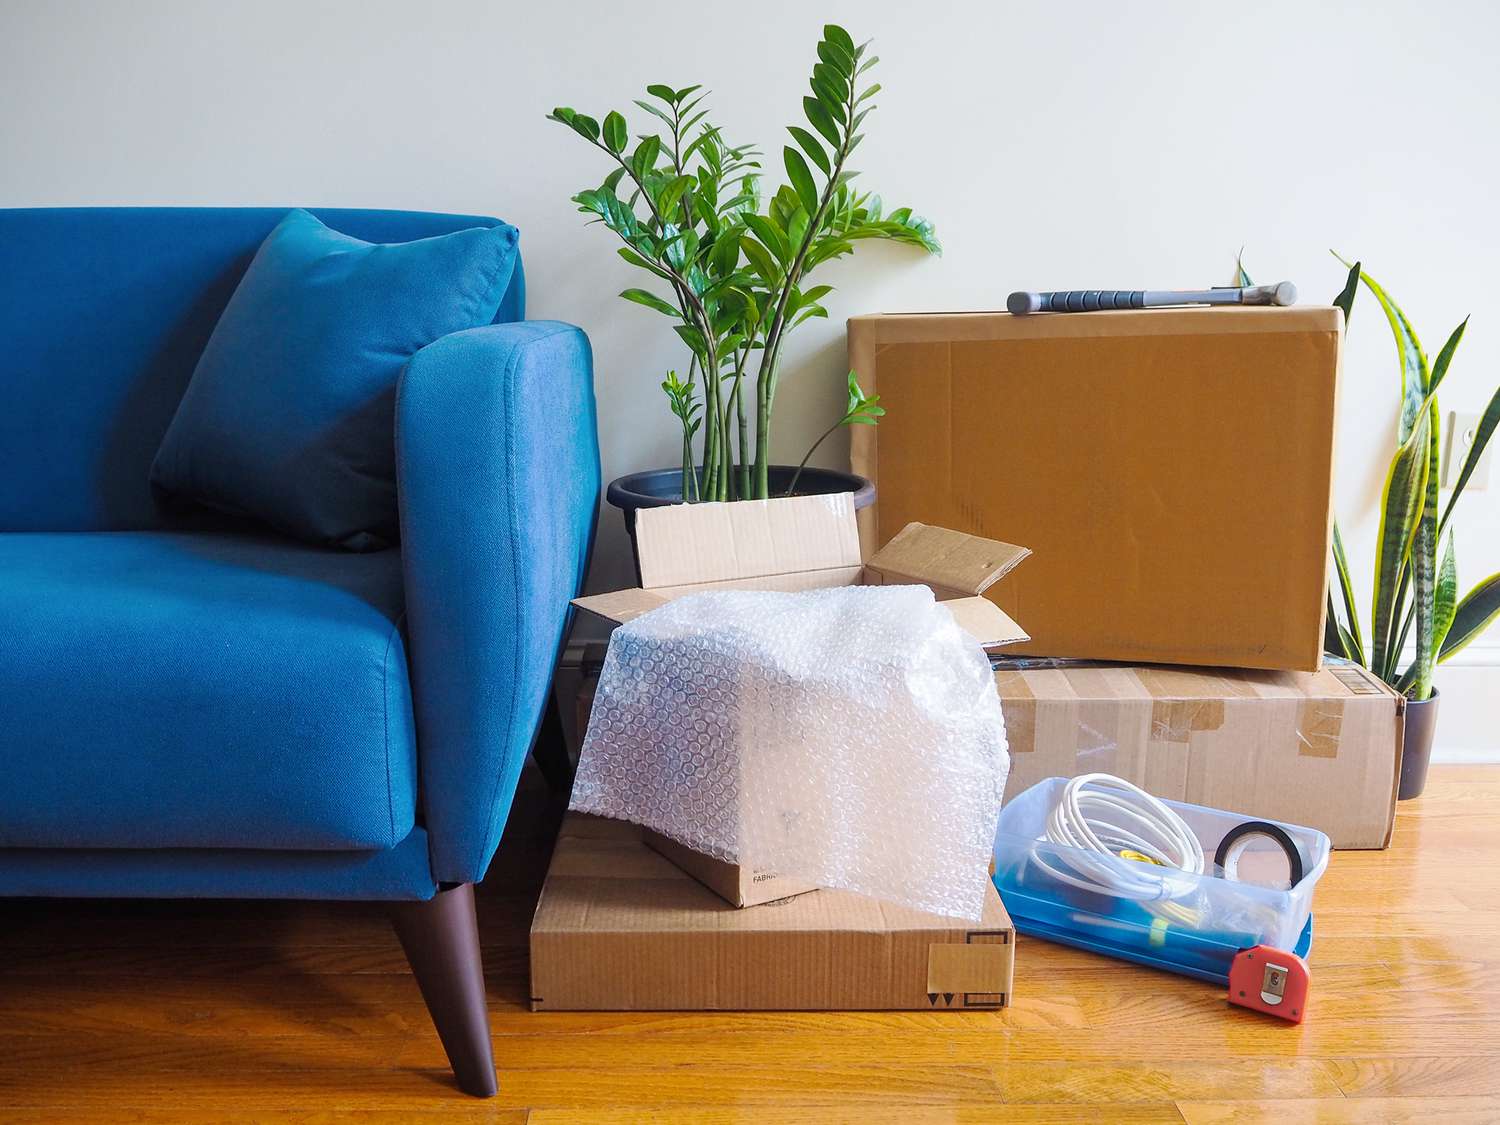 Blaue Couch neben Umzugskartons, Zimmerpflanzen und Eisenwaren 